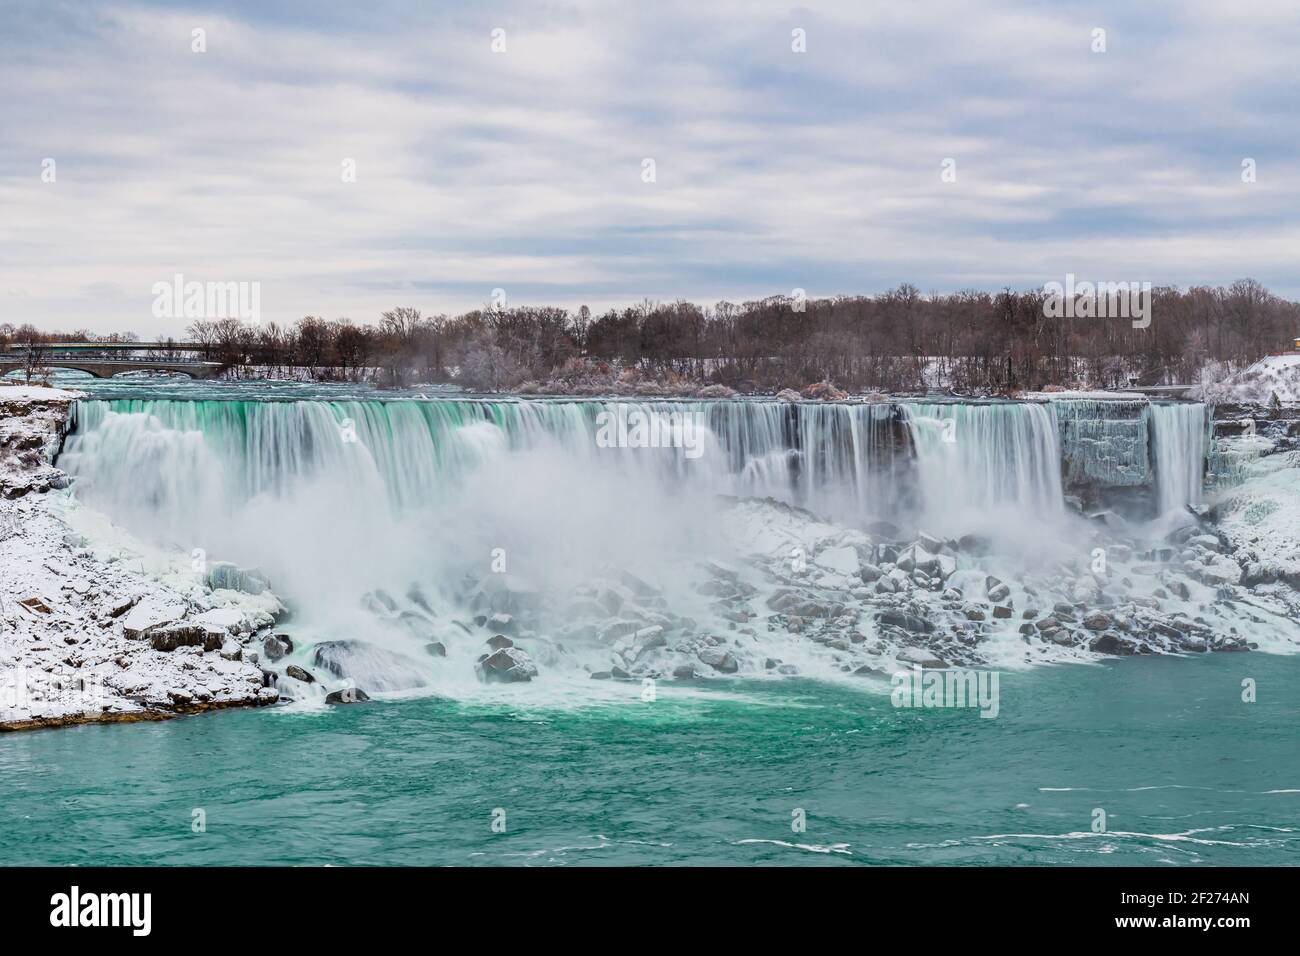 Niagara Falls Ontario Canada in winter Stock Photo